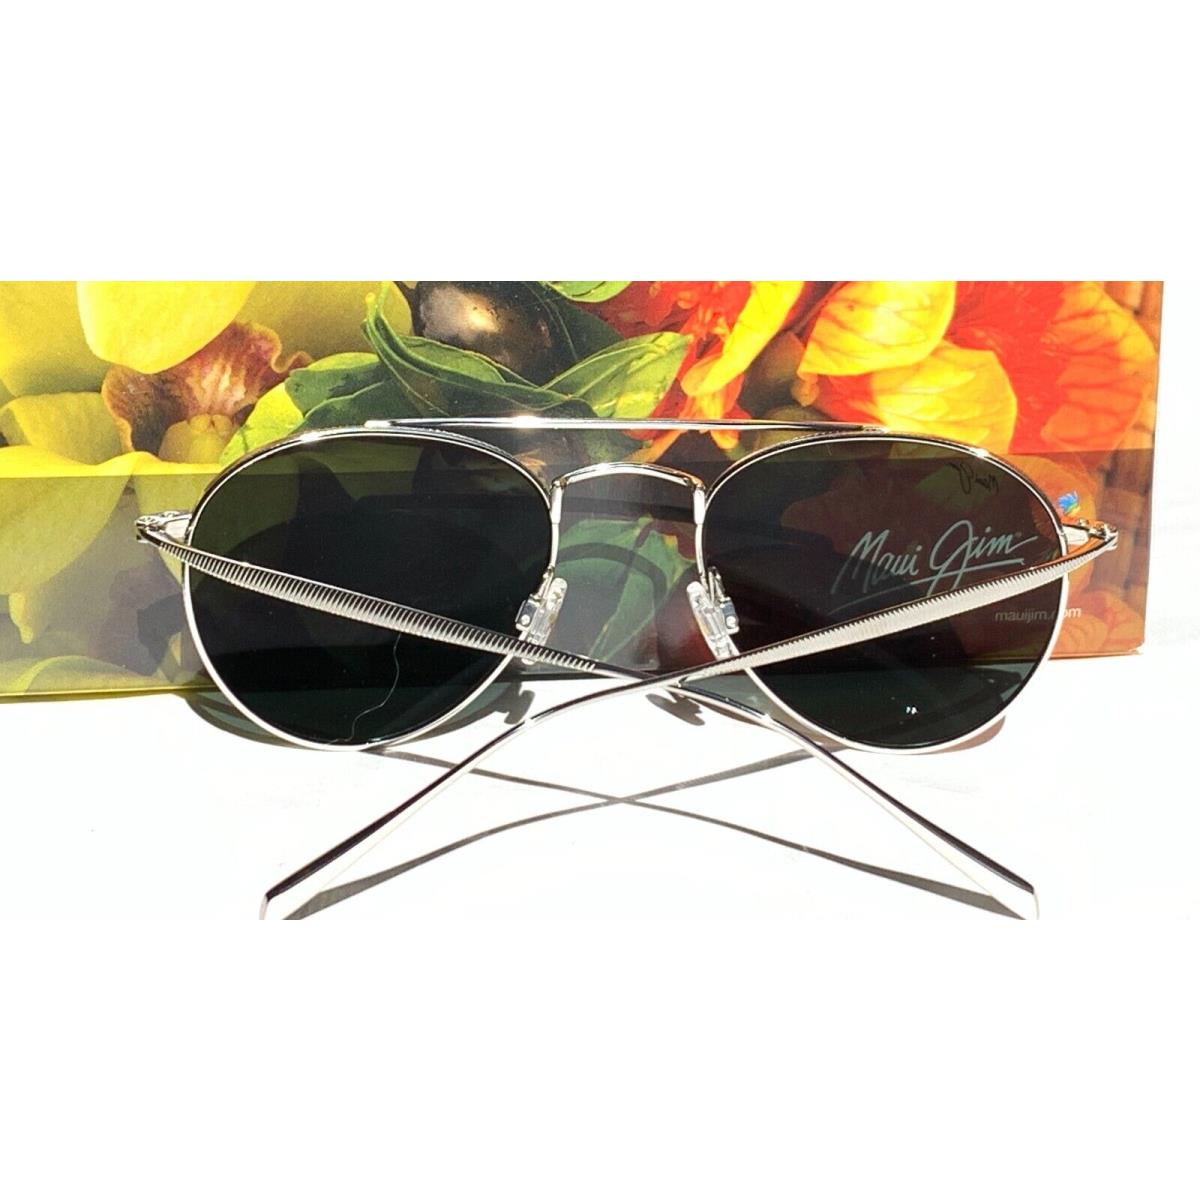 Maui Jim sunglasses  - Silver Frame, Gray Lens